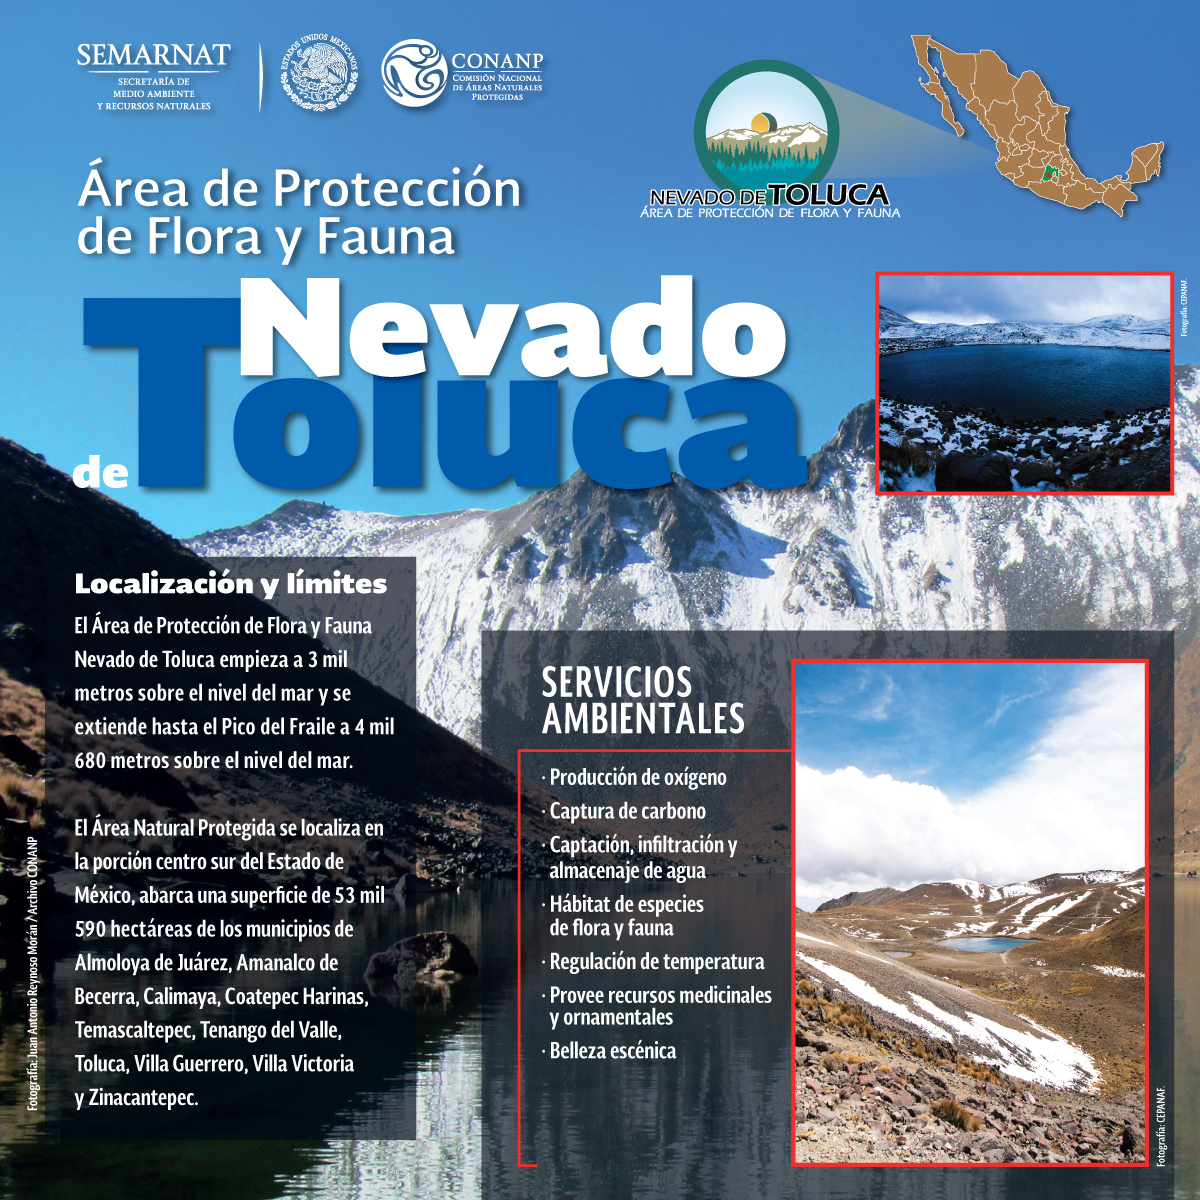 /cms/uploads/image/file/220735/infografia-NEVADO-DE-TOLUCA_servicios-ambientales-168x118.5-_50__v5.jpg